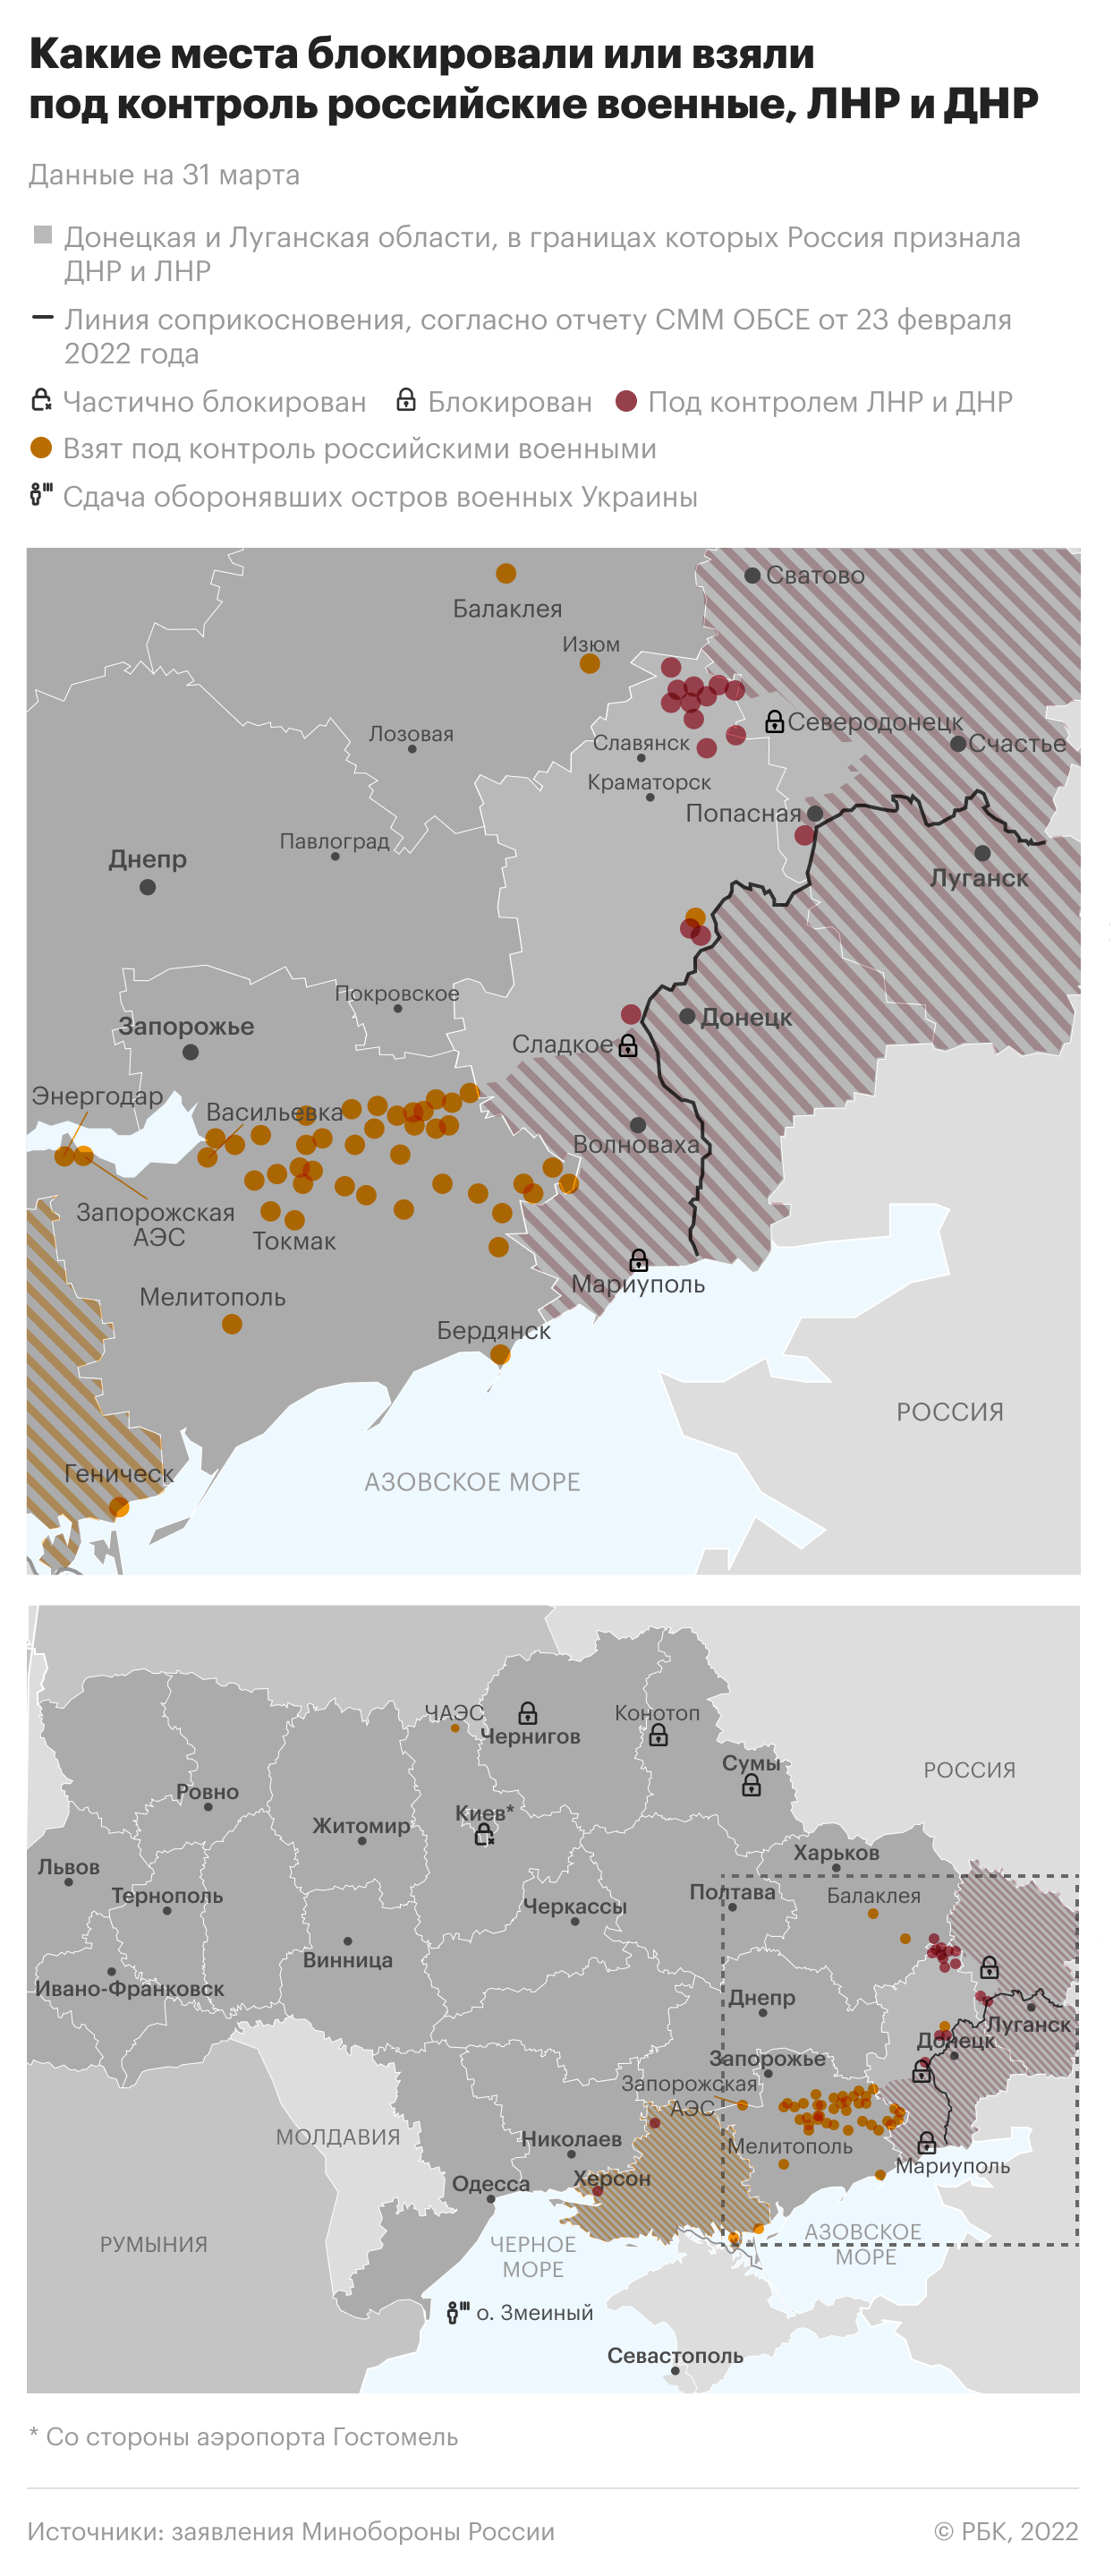 Какие места на Украине взяли под контроль российские военные. Карта"/>













